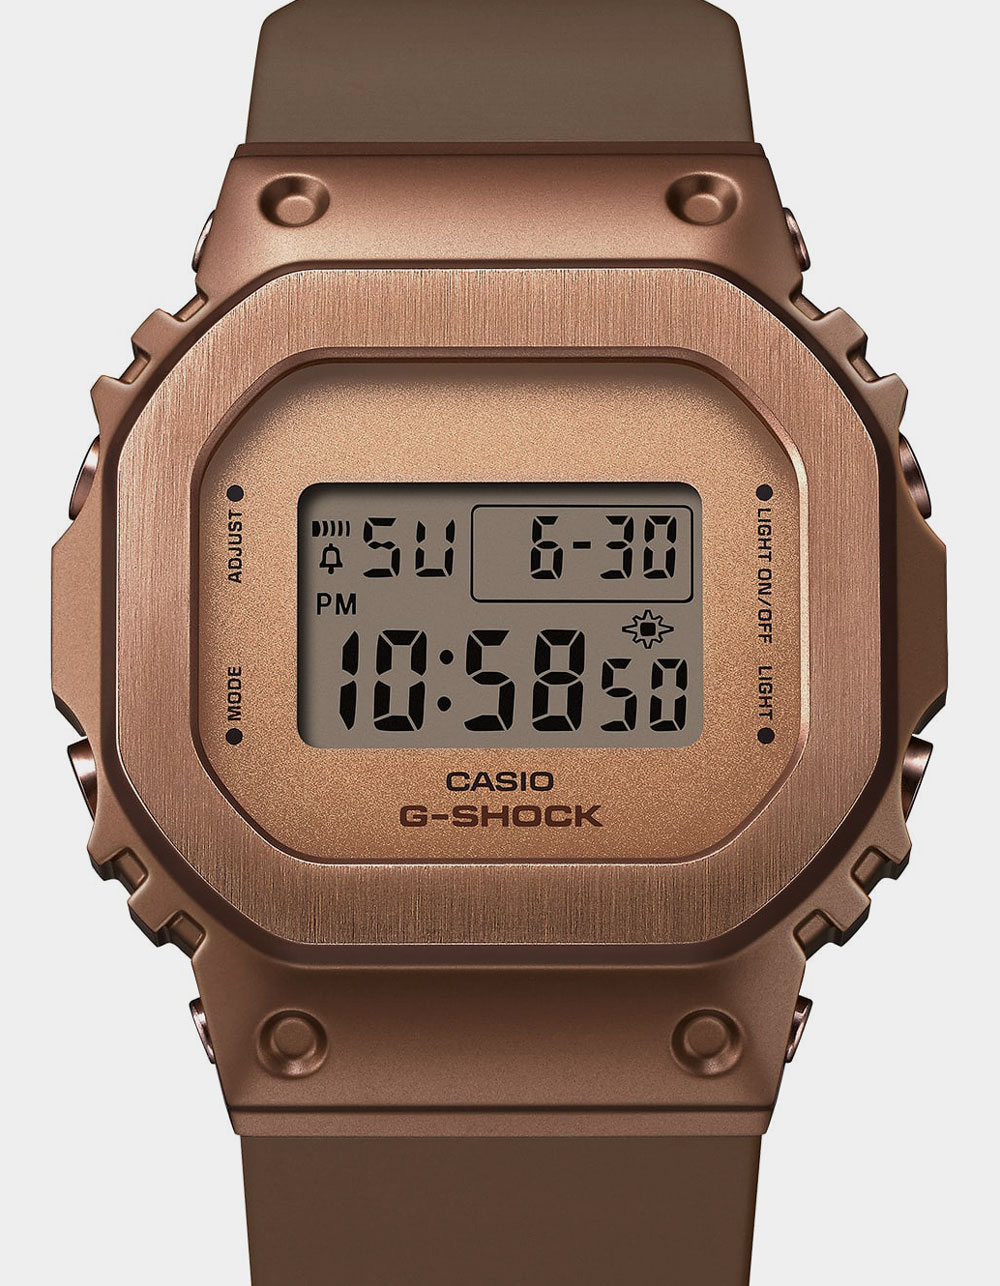 G-SHOCK GMS5600BR-5 Watch